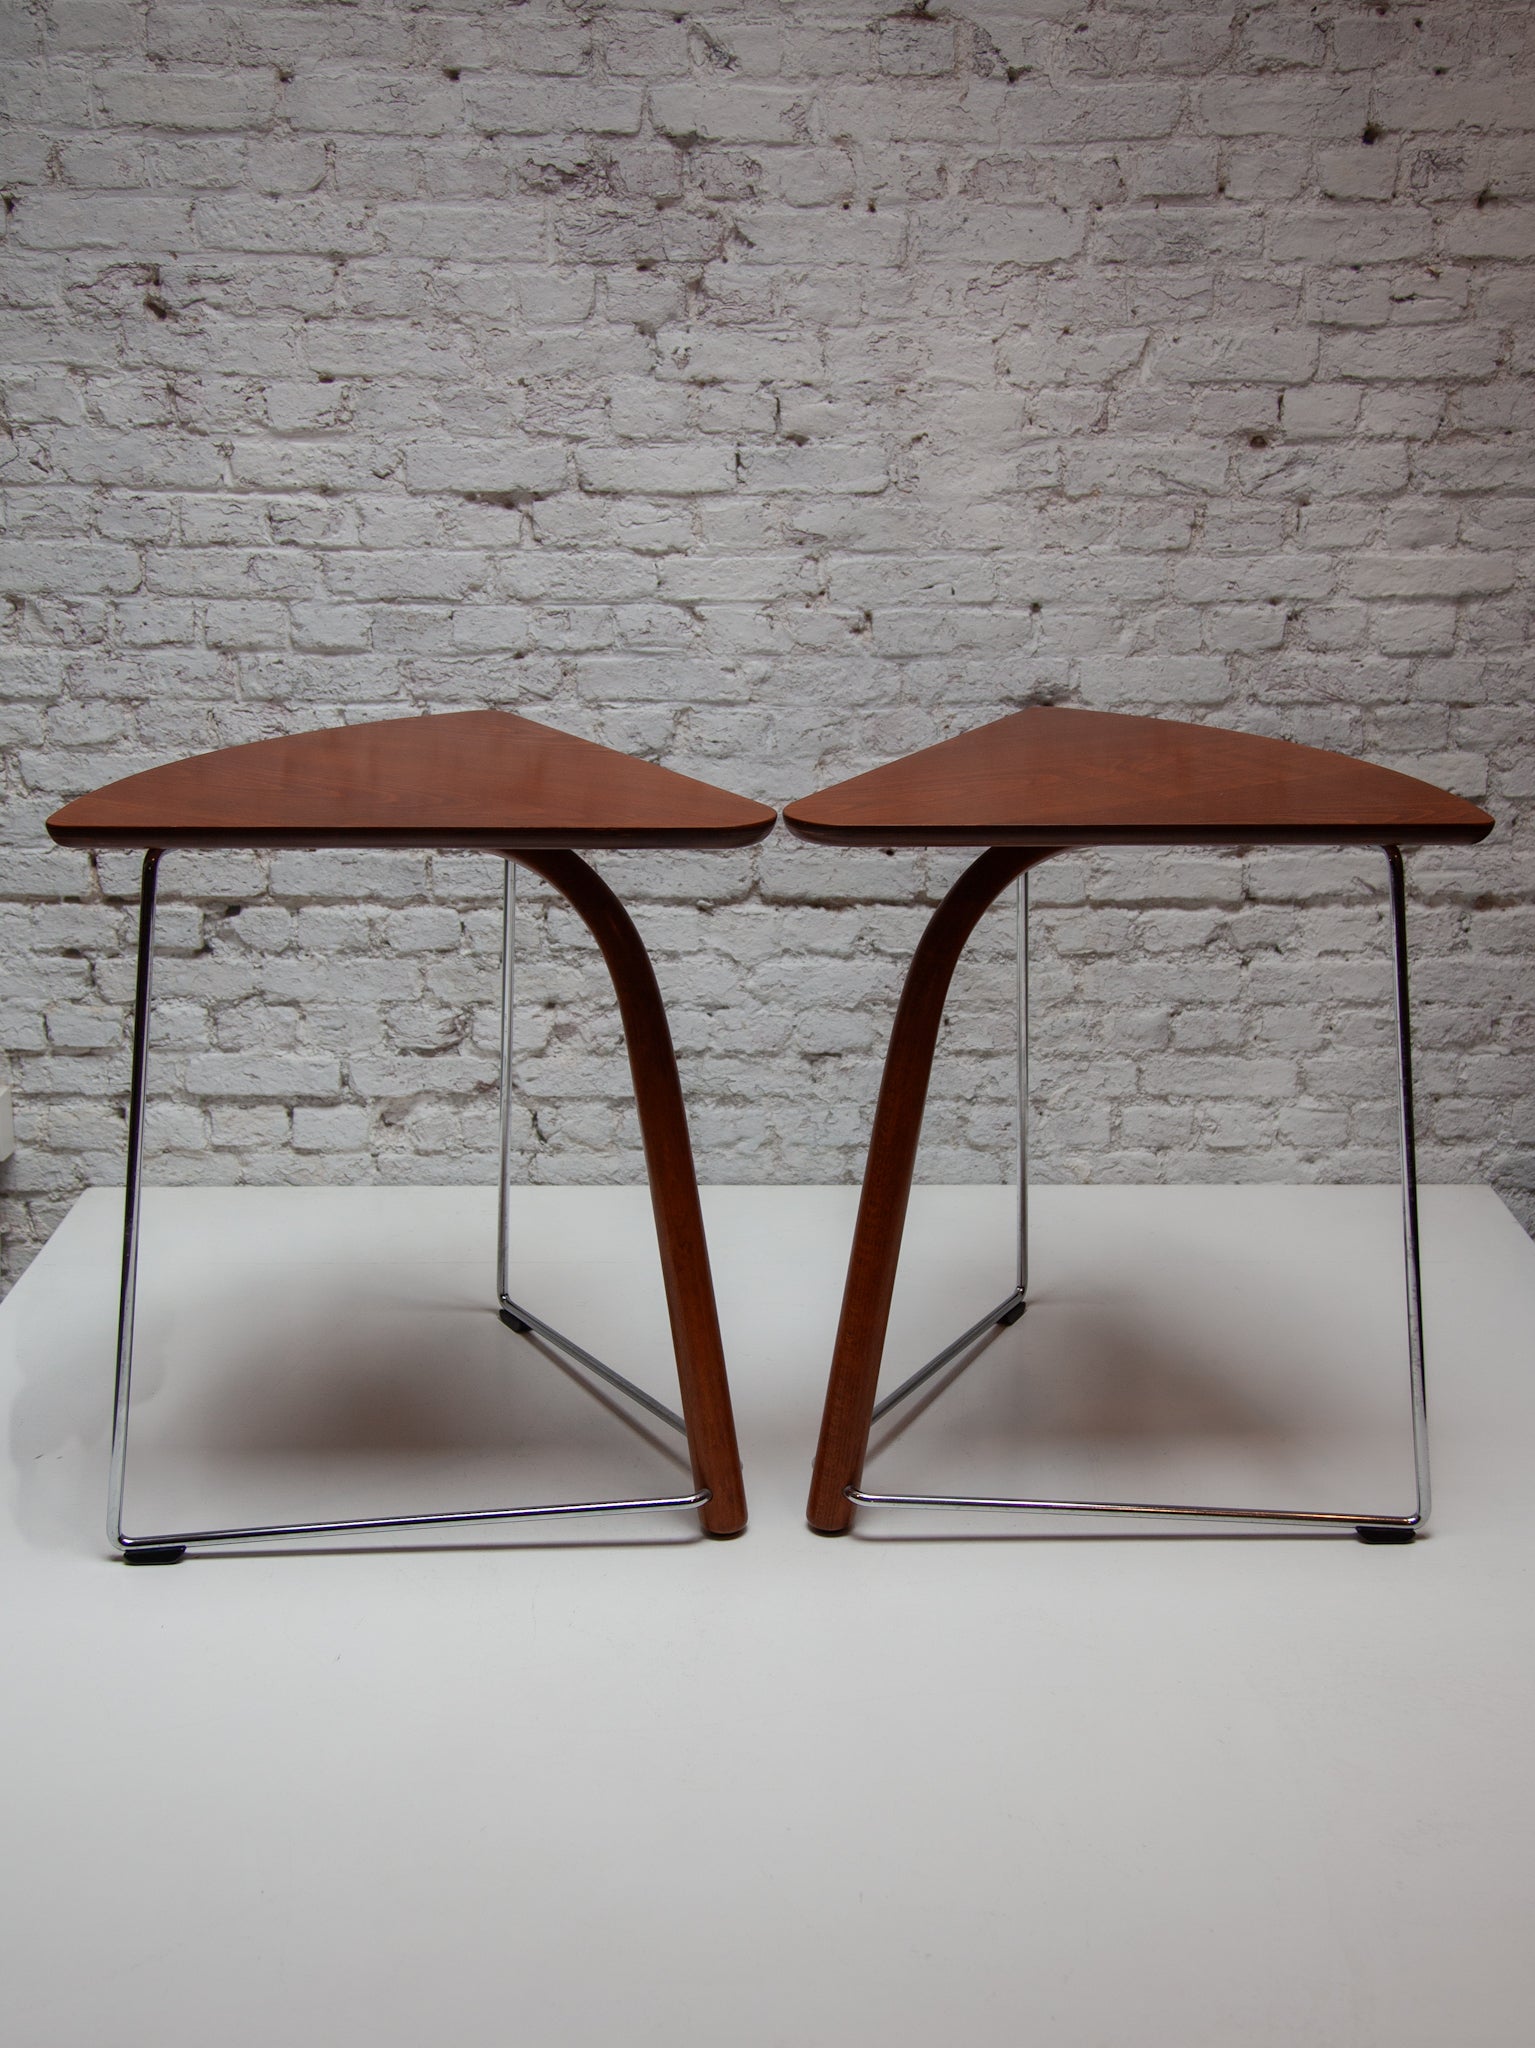 Zwei Beistelltische von Thonet, entworfen von Wulf Schneider und Ulrich Böhme, passend zu ihrem Stuhl S320. Das vordere Bein aus dampfgebogenem Holz, inspiriert von Thonets langer Tradition dampfgebogener Möbel, wird mit verchromten Stahlbeinen und